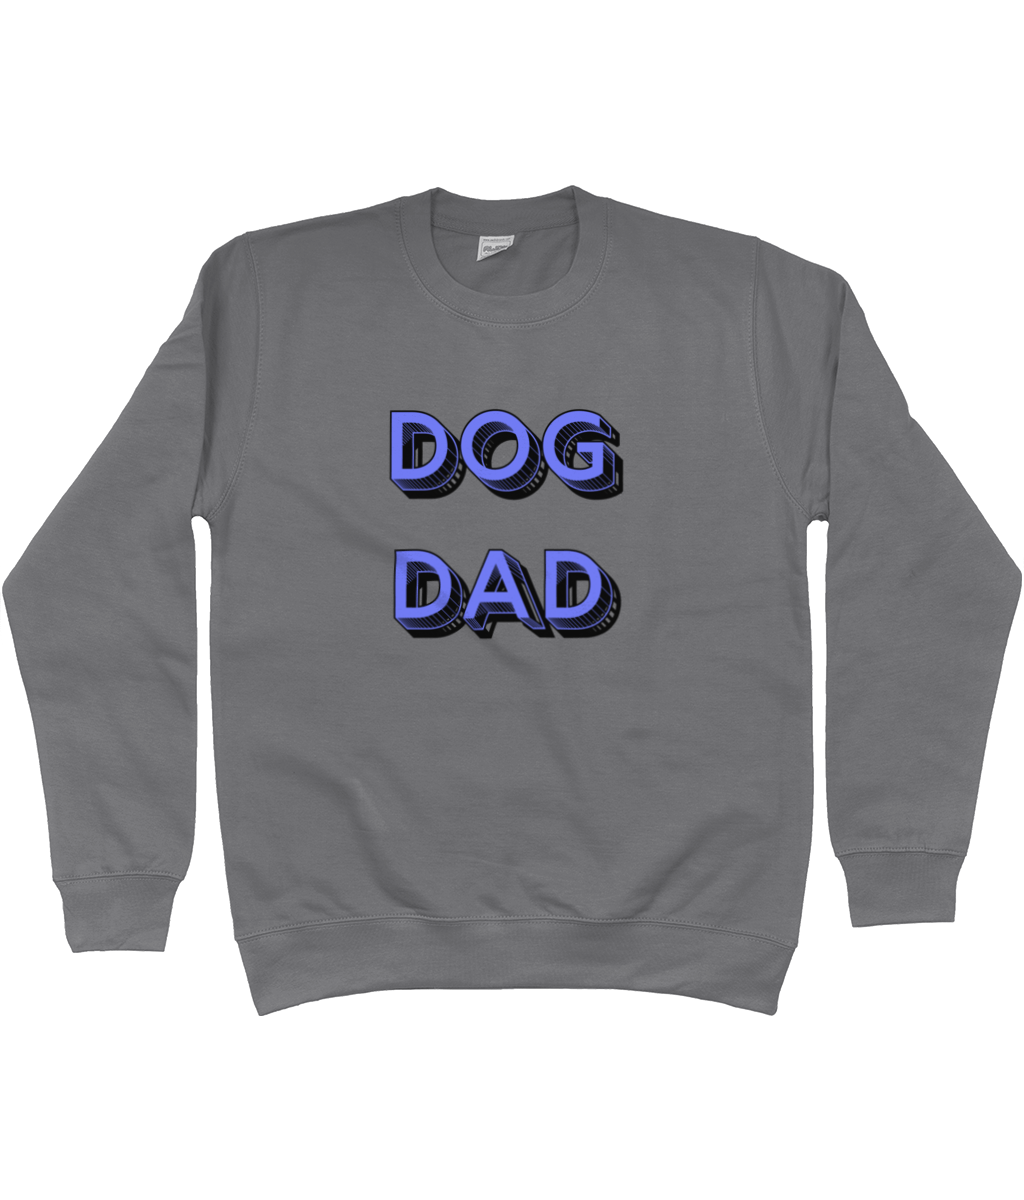 dog dad sweatshirt